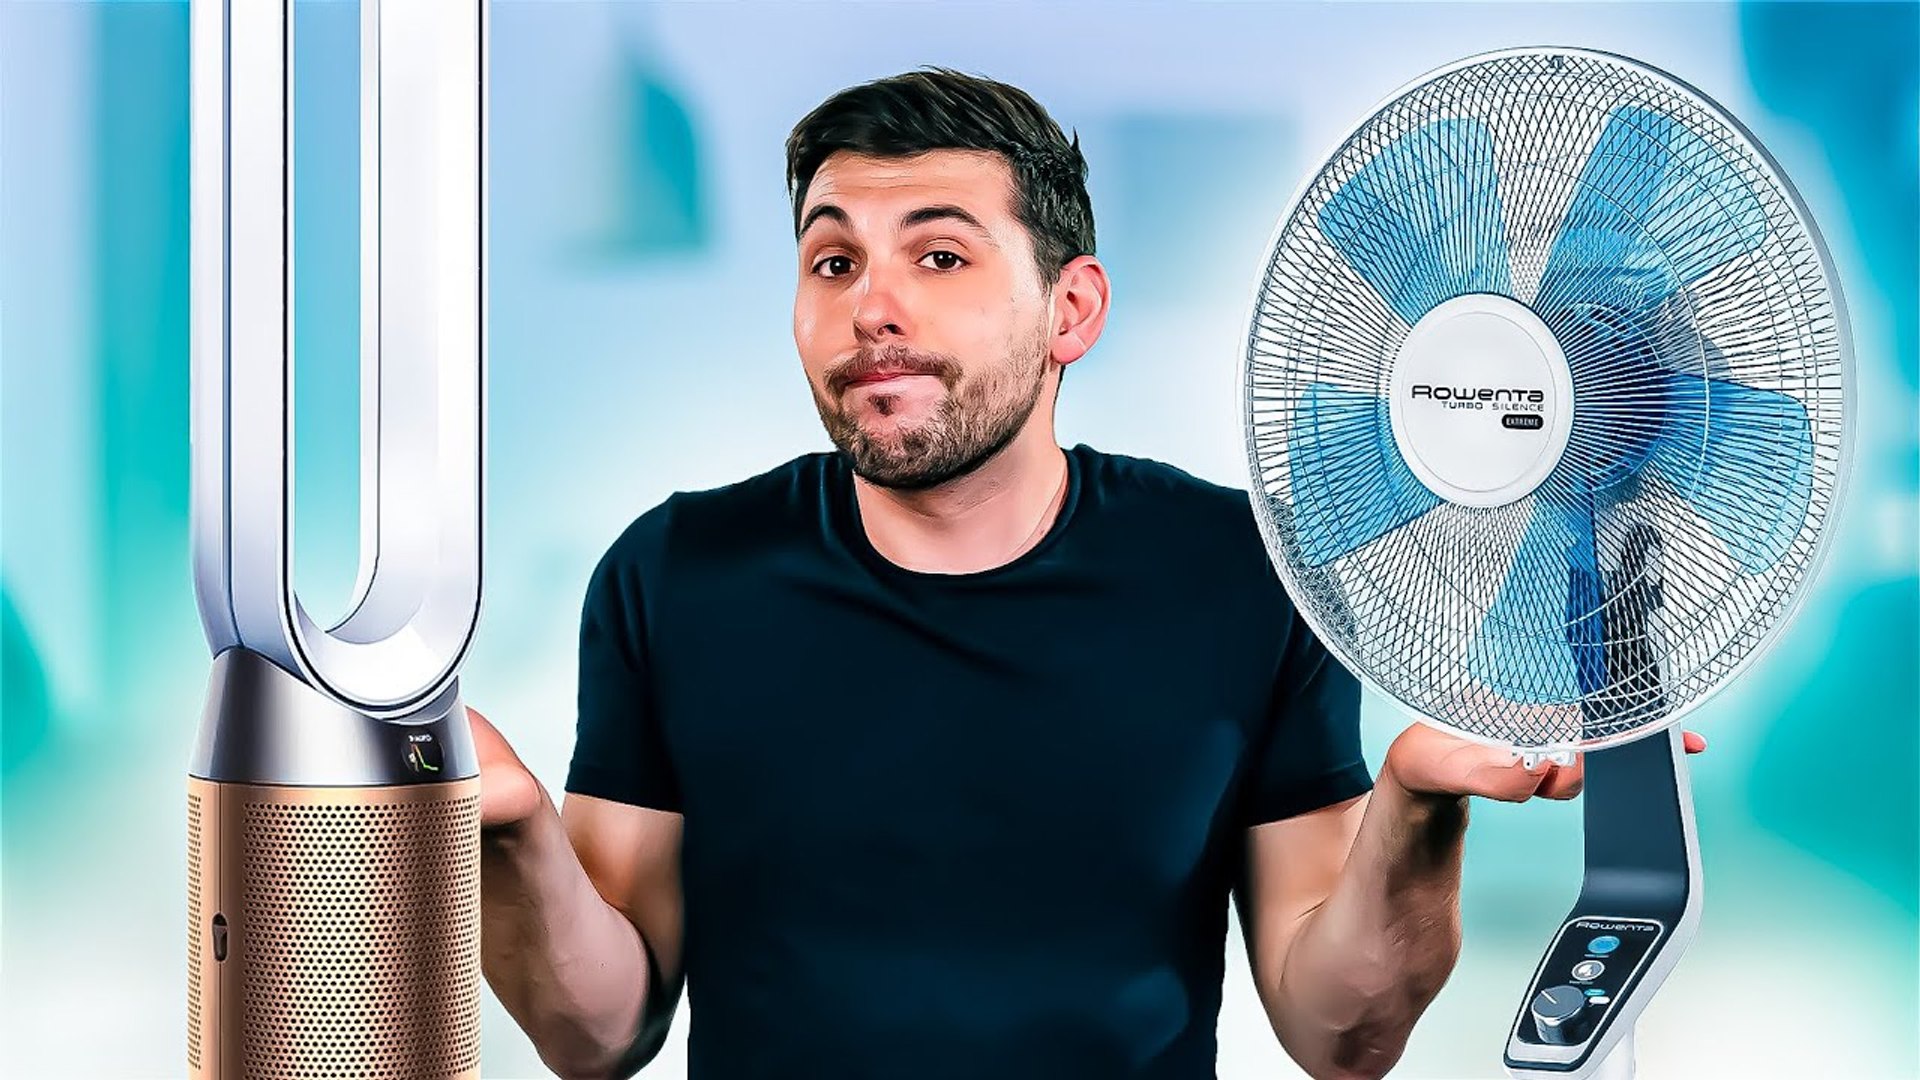 Dyson à 700€ vs. Ventilateur à 99€ - La dure VÉRITÉ - Vidéo Dailymotion